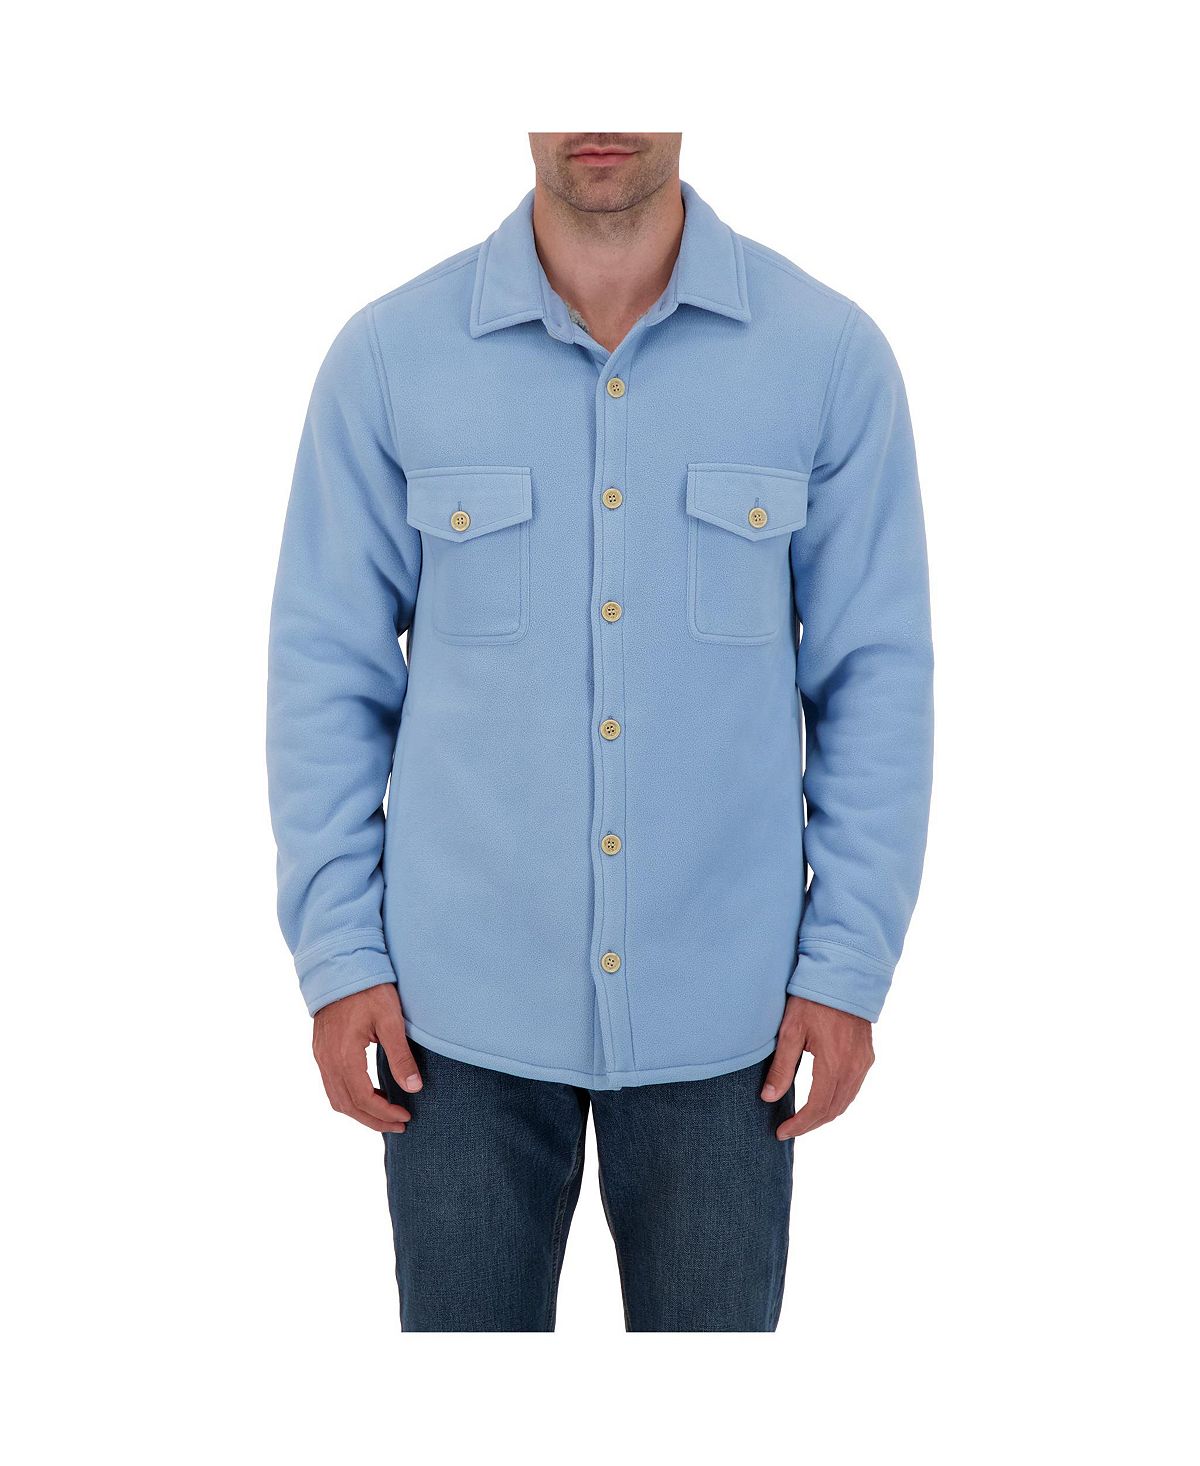 Мужская однотонная куртка-рубашка Jax с длинными рукавами Heat Holders